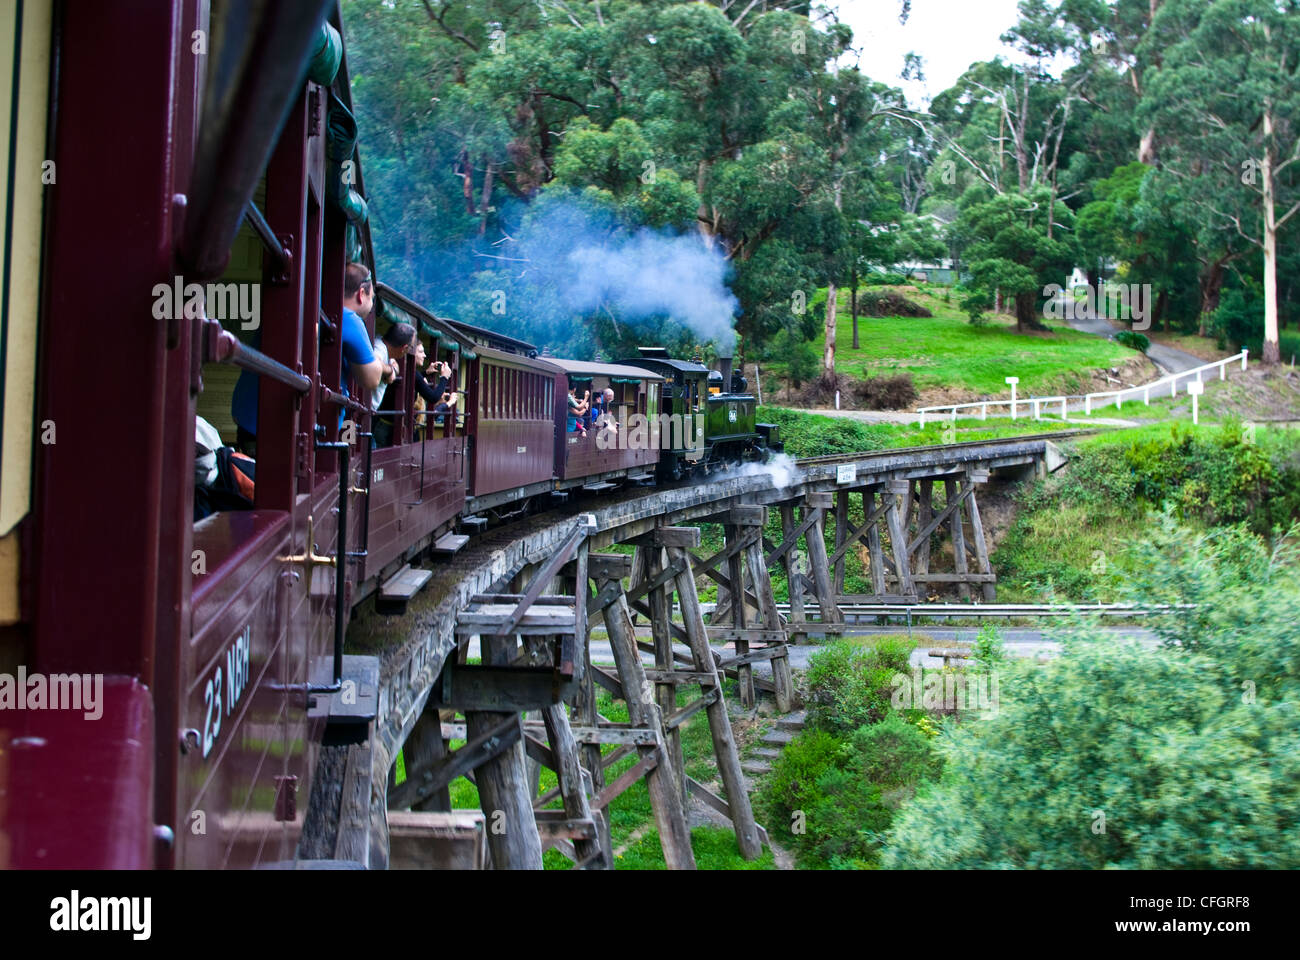 Passagiere auf einem antiken Dampf Zug eine hölzerne Eisenbahnbrücke überquert. Stockfoto